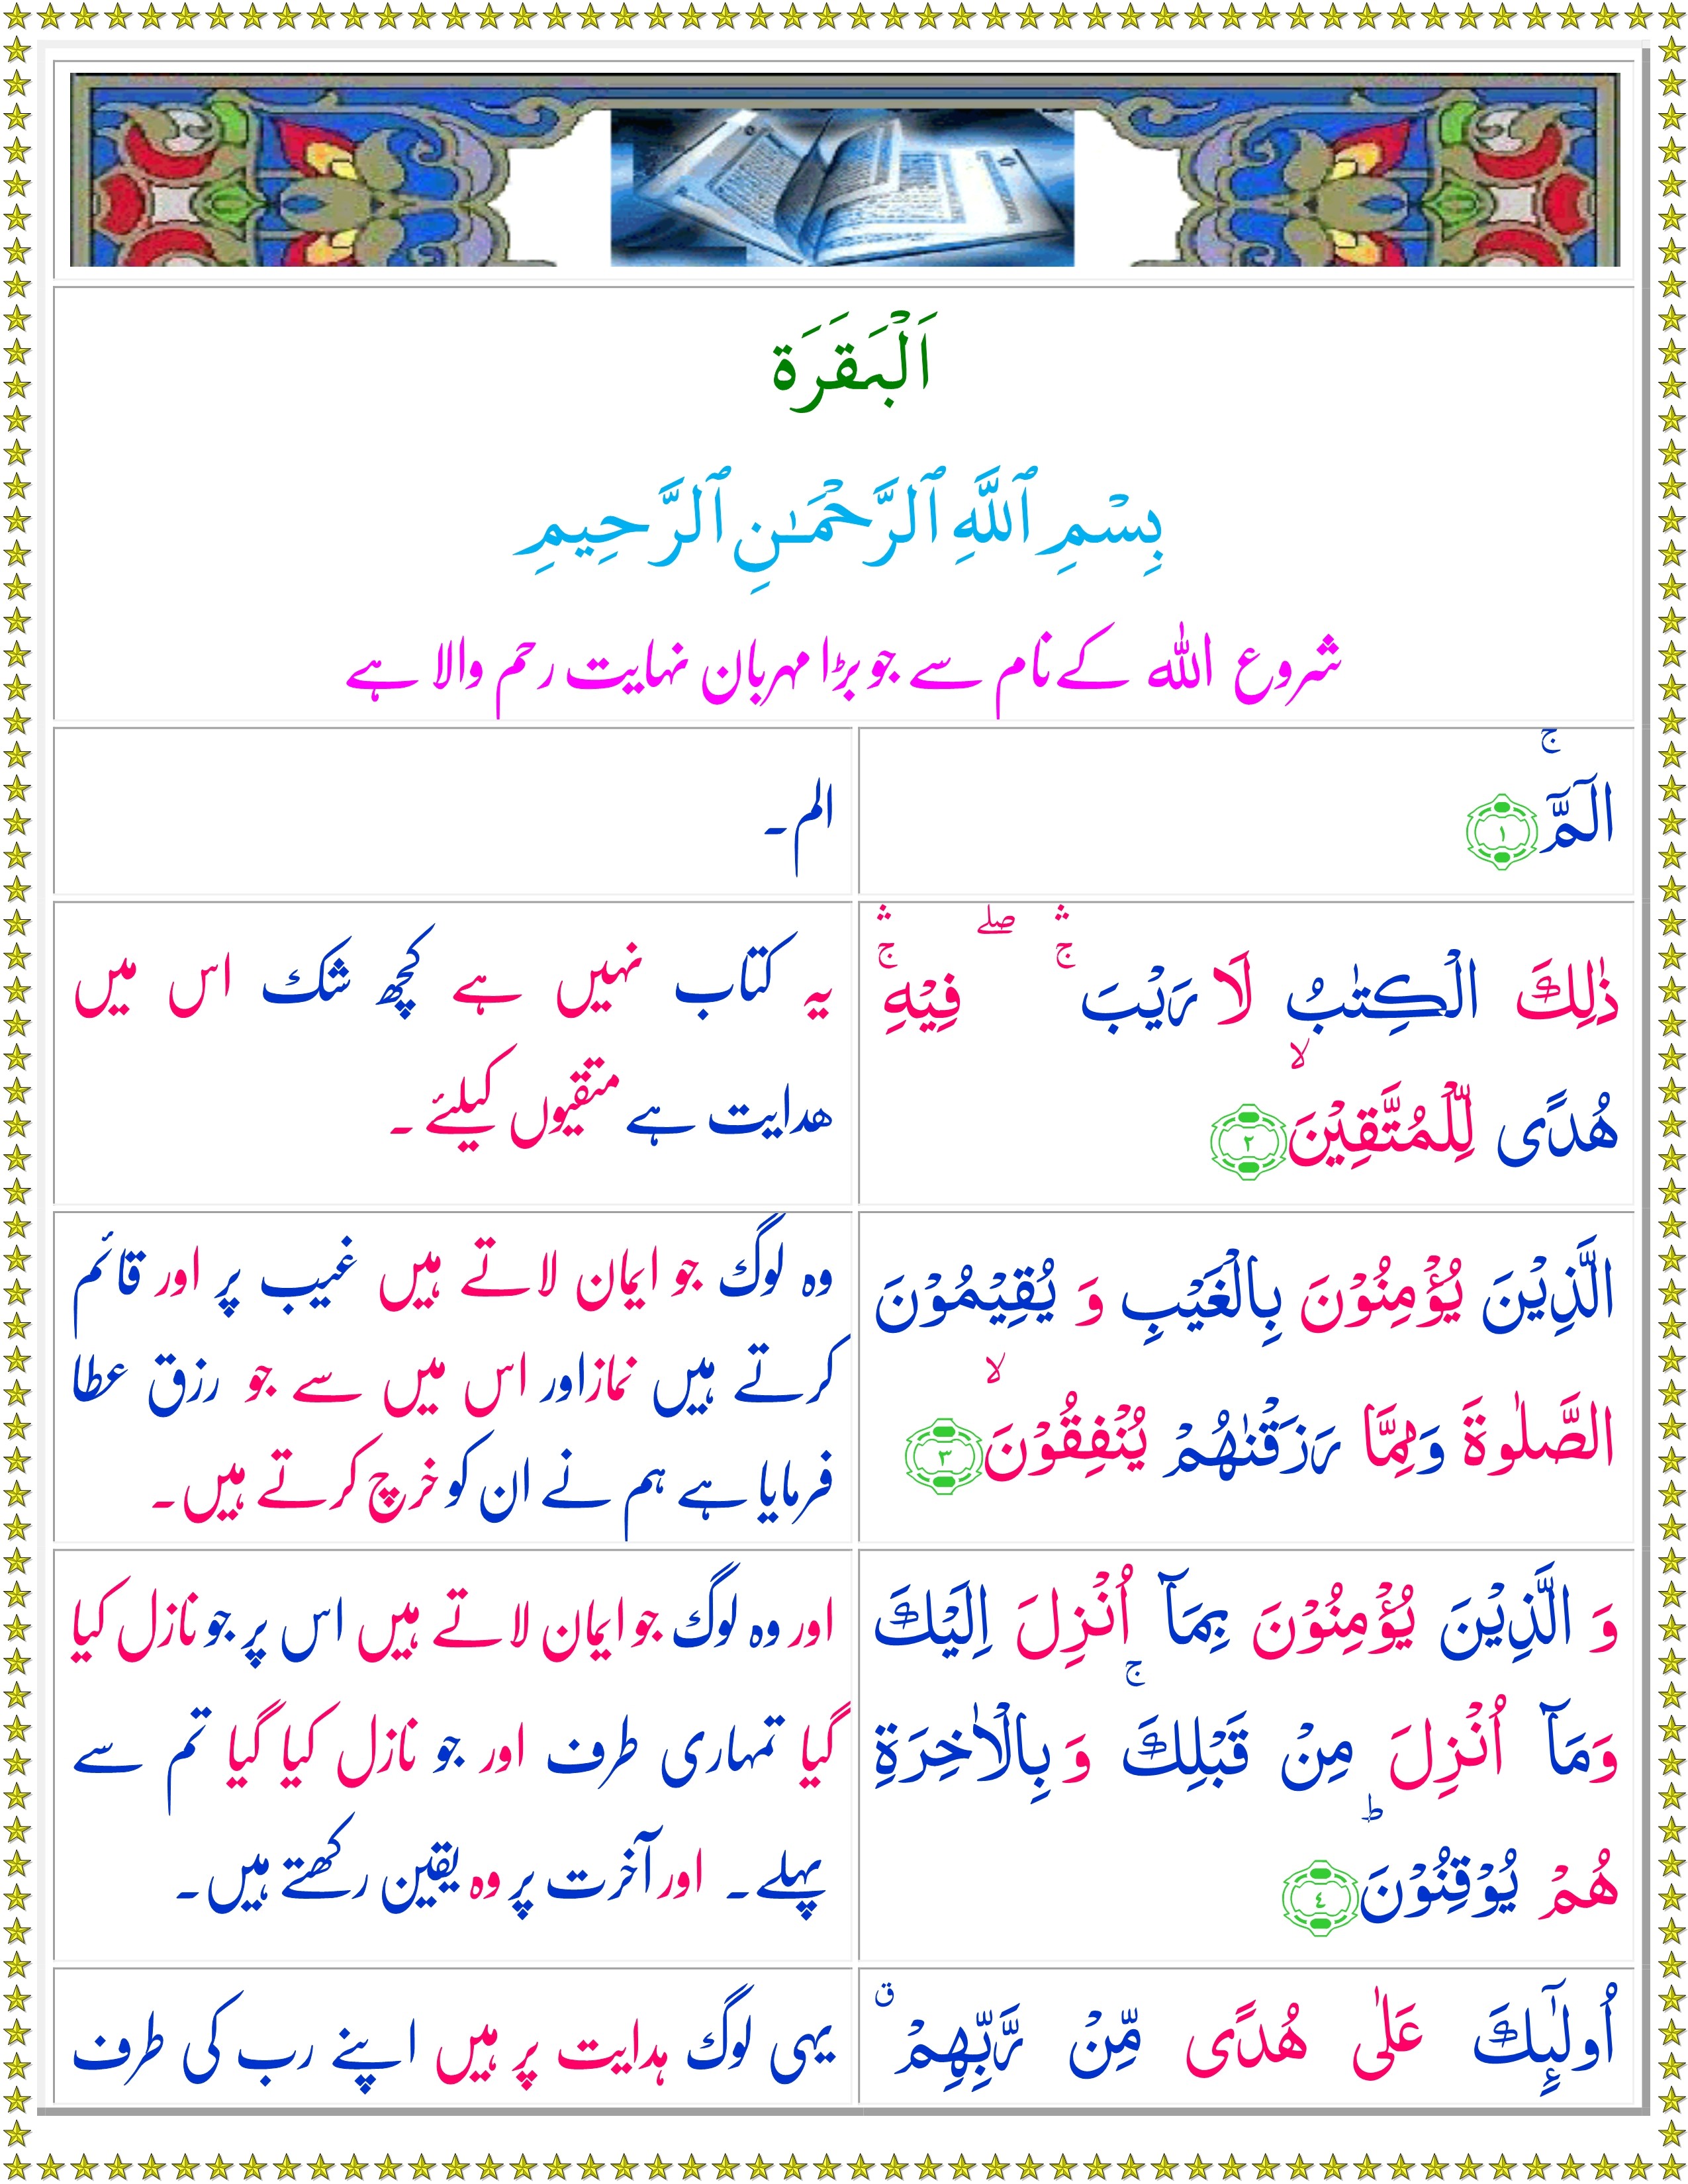 read quran with urdu translation